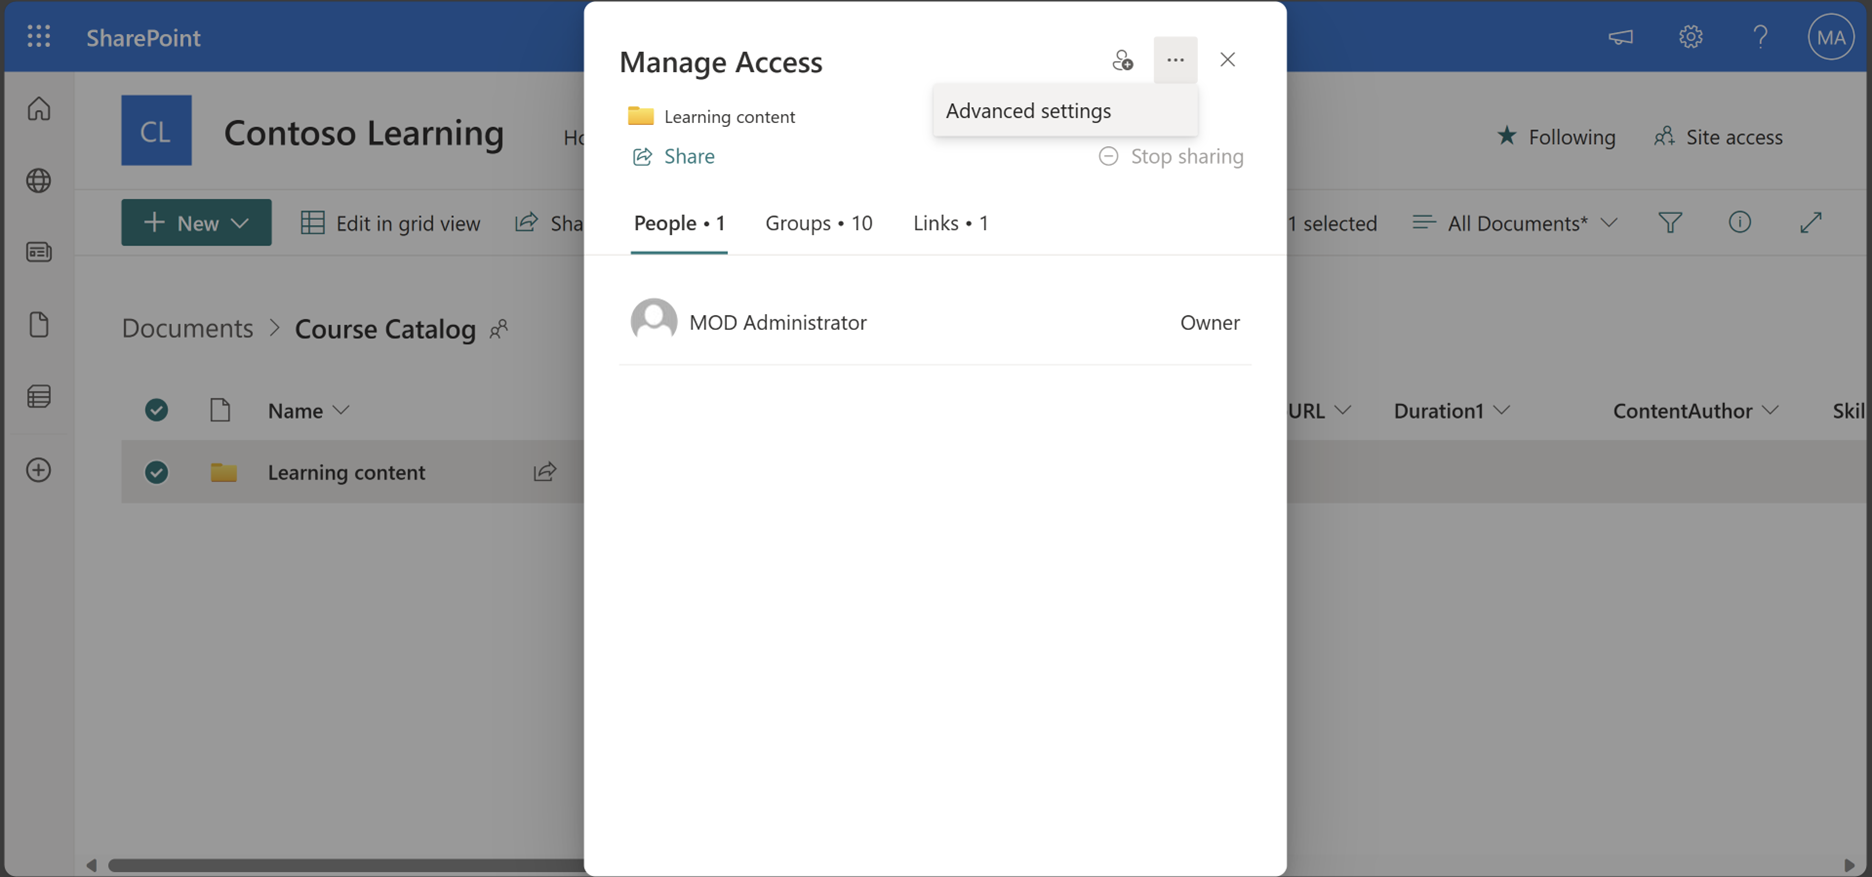 Captura de tela das configurações avançadas de gerenciamento de acesso do SharePoint.